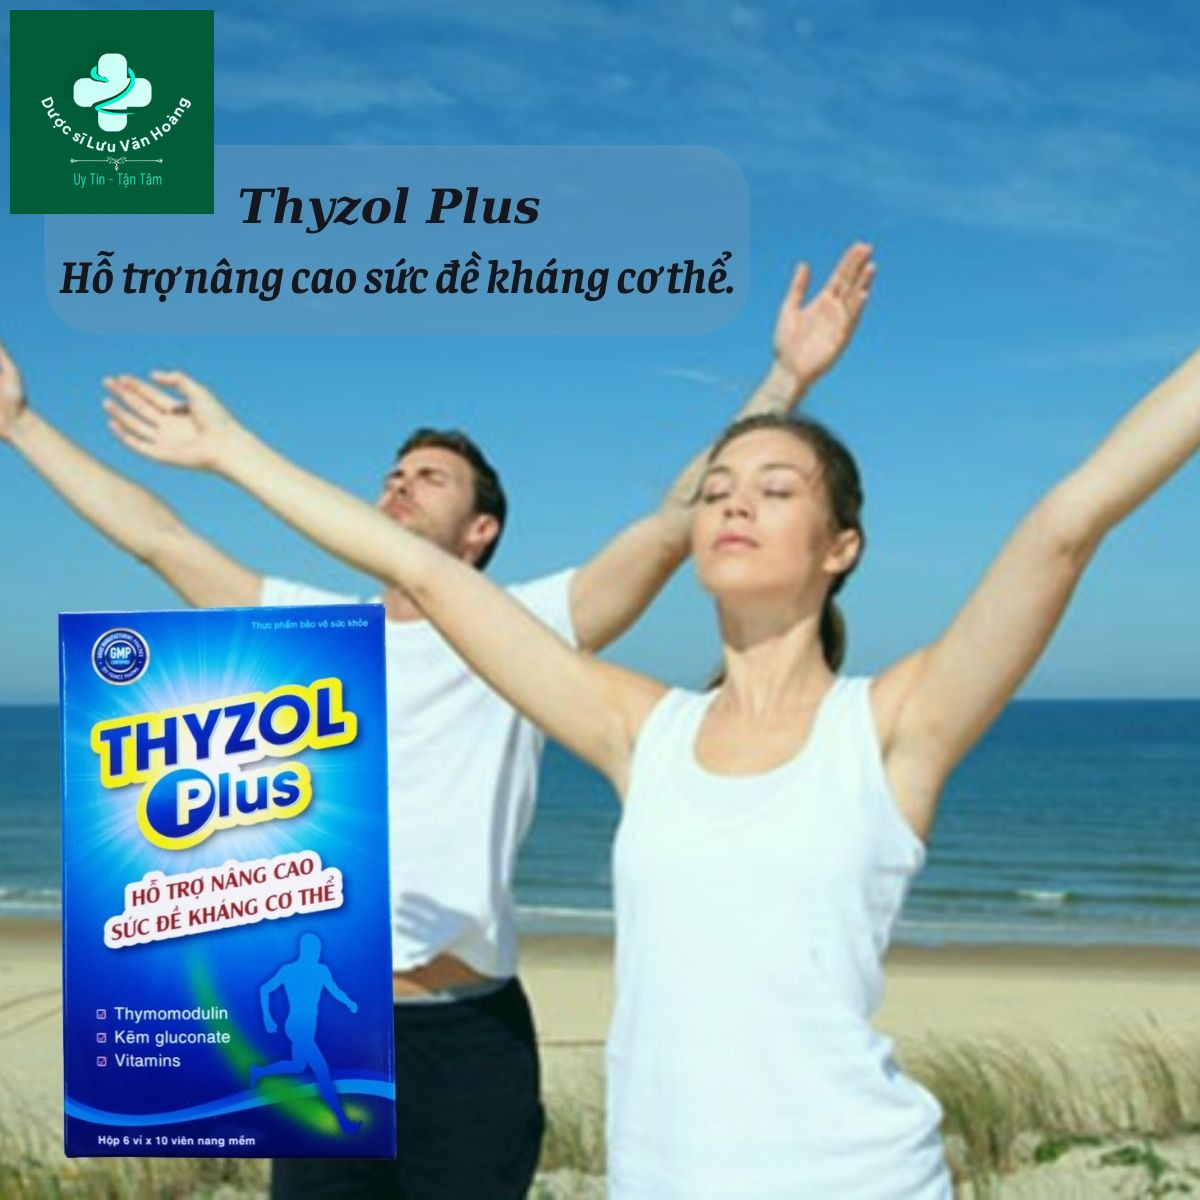 Thyzol Plus còn hỗ trợ tăng cường cho sức khoẻ